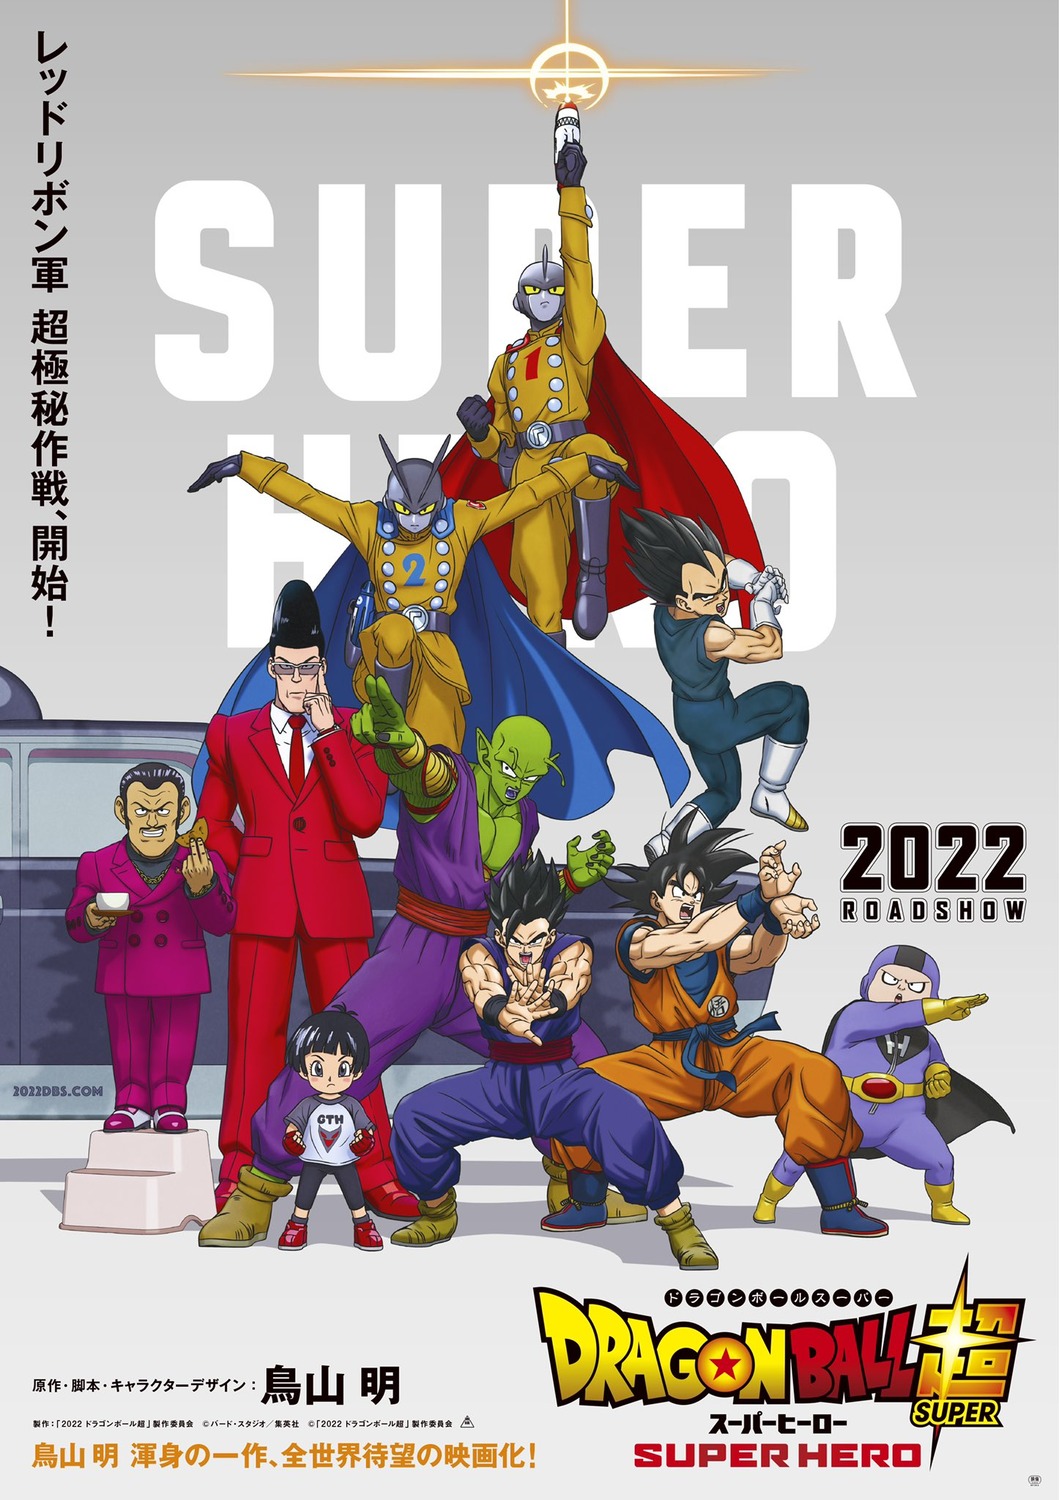 Simplemente DB - Dragon Ball Super: Super Hero será el